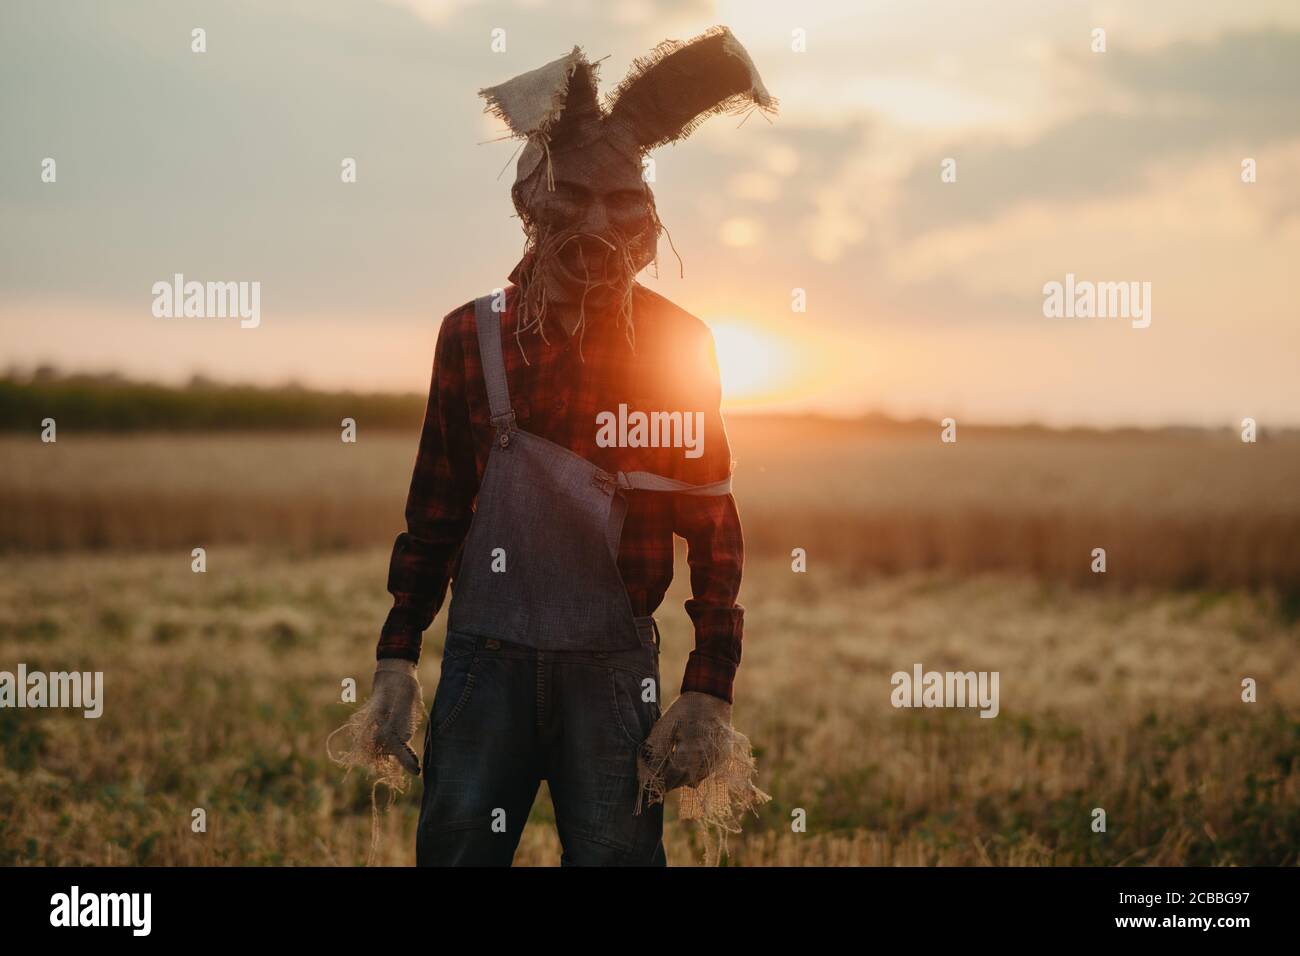 Mann im Bild des Zauberers im Hut mit Kaninchenohren steht zwischen Weizenfeld gegen Sonnenuntergang Himmel. Stockfoto